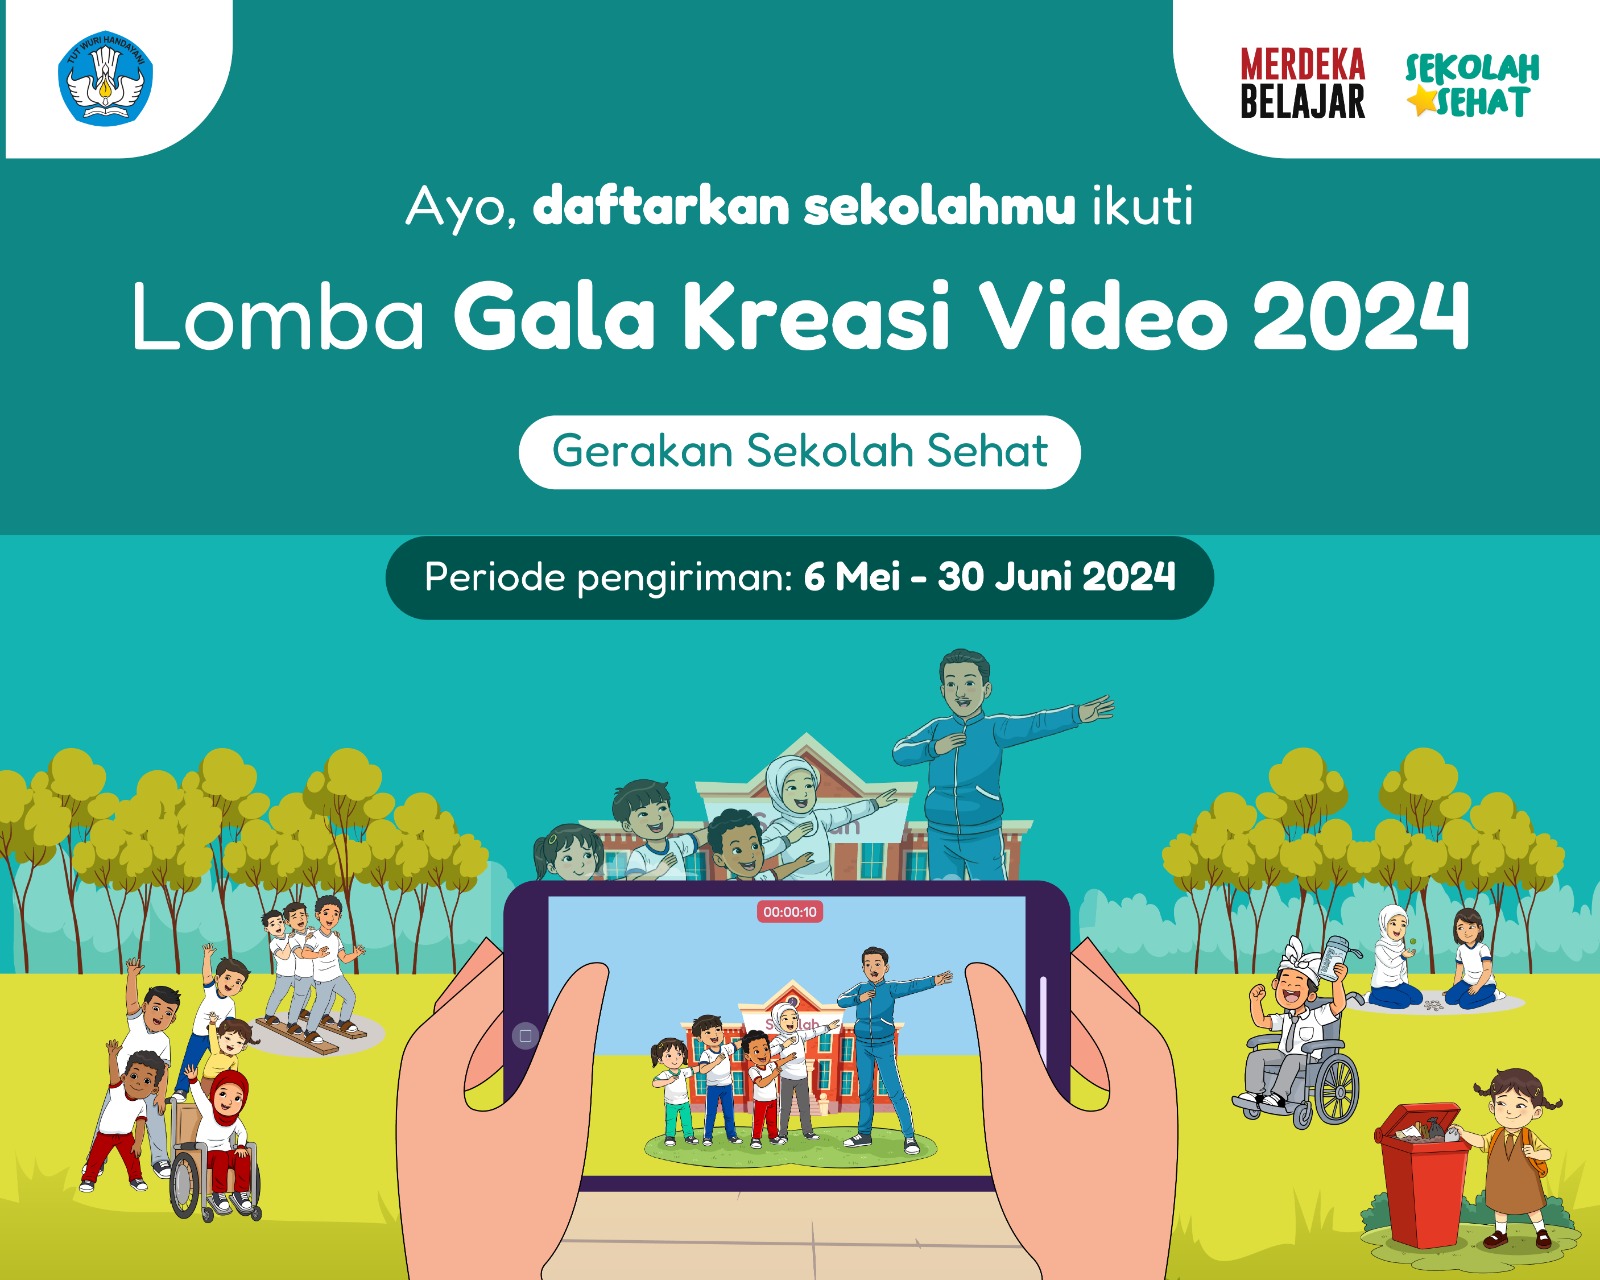 Gala Kreasi Video Gerakan Sekolah Sehat 2024 Kembali Dibuka, Catat Tanggal Pendaftarannya!